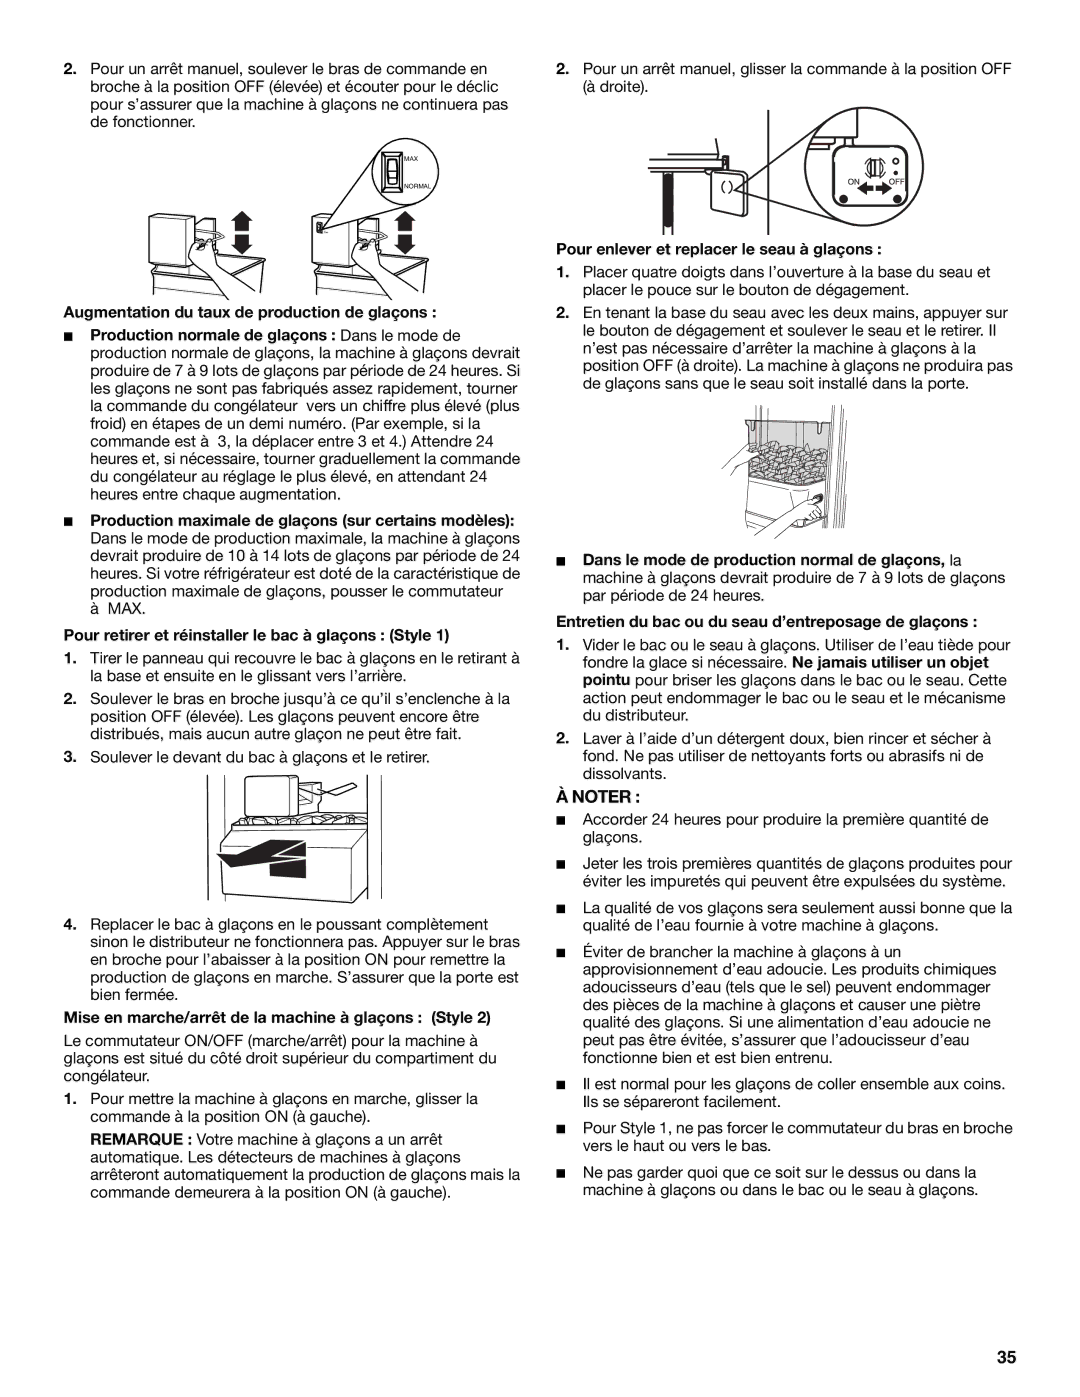 Whirlpool RS22AQXGN00 Augmentation du taux de production de glaçons, Mise en marche/arrêt de la machine à glaçons Style 